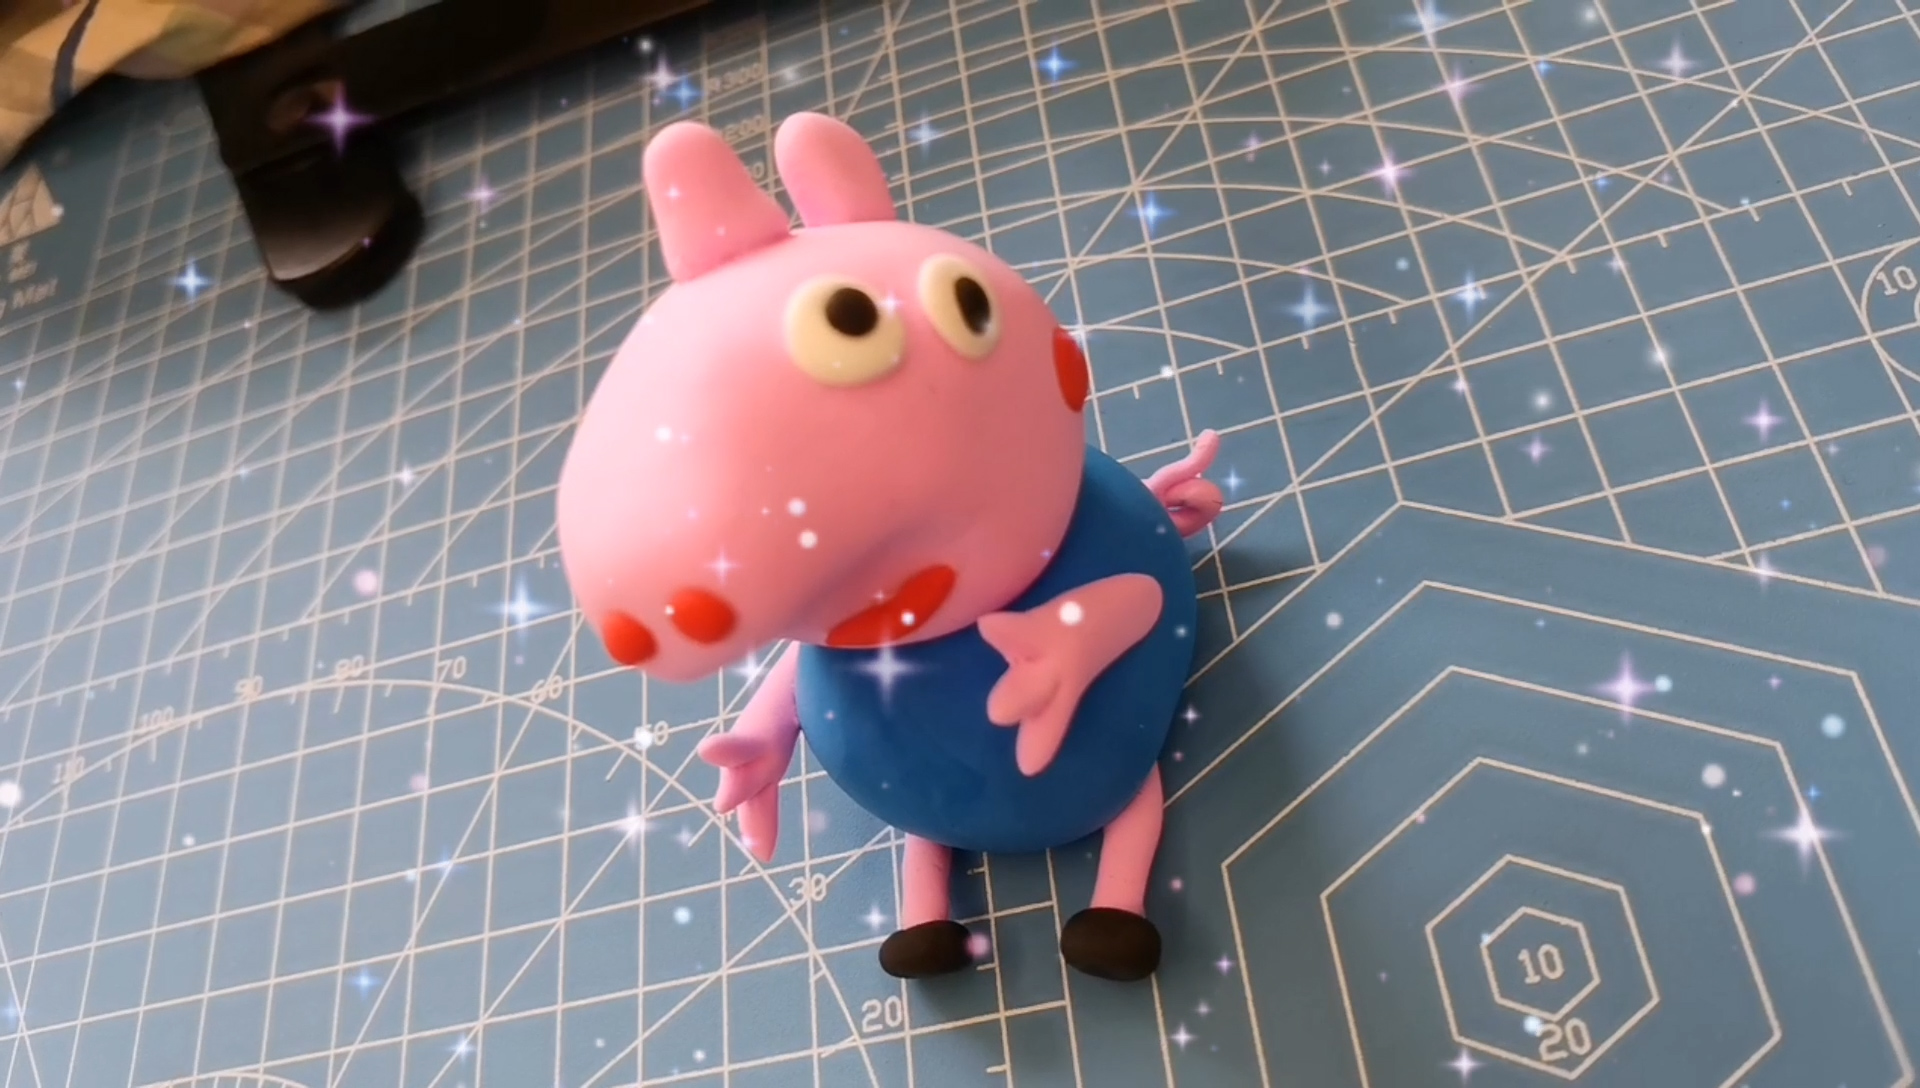 彩泥小猪的制作方法图片